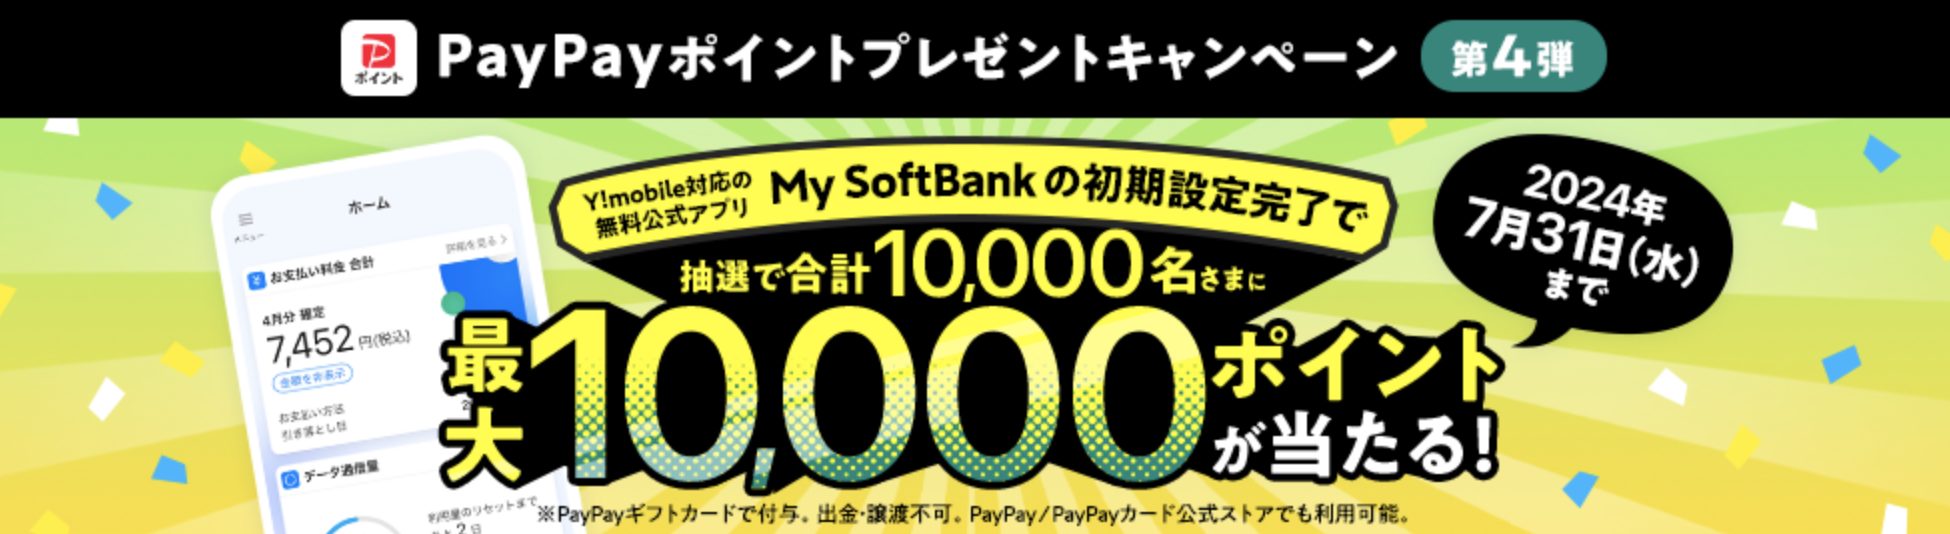 My SoftBankアプリ設定でPayPayポイントが当たるキャンペーン